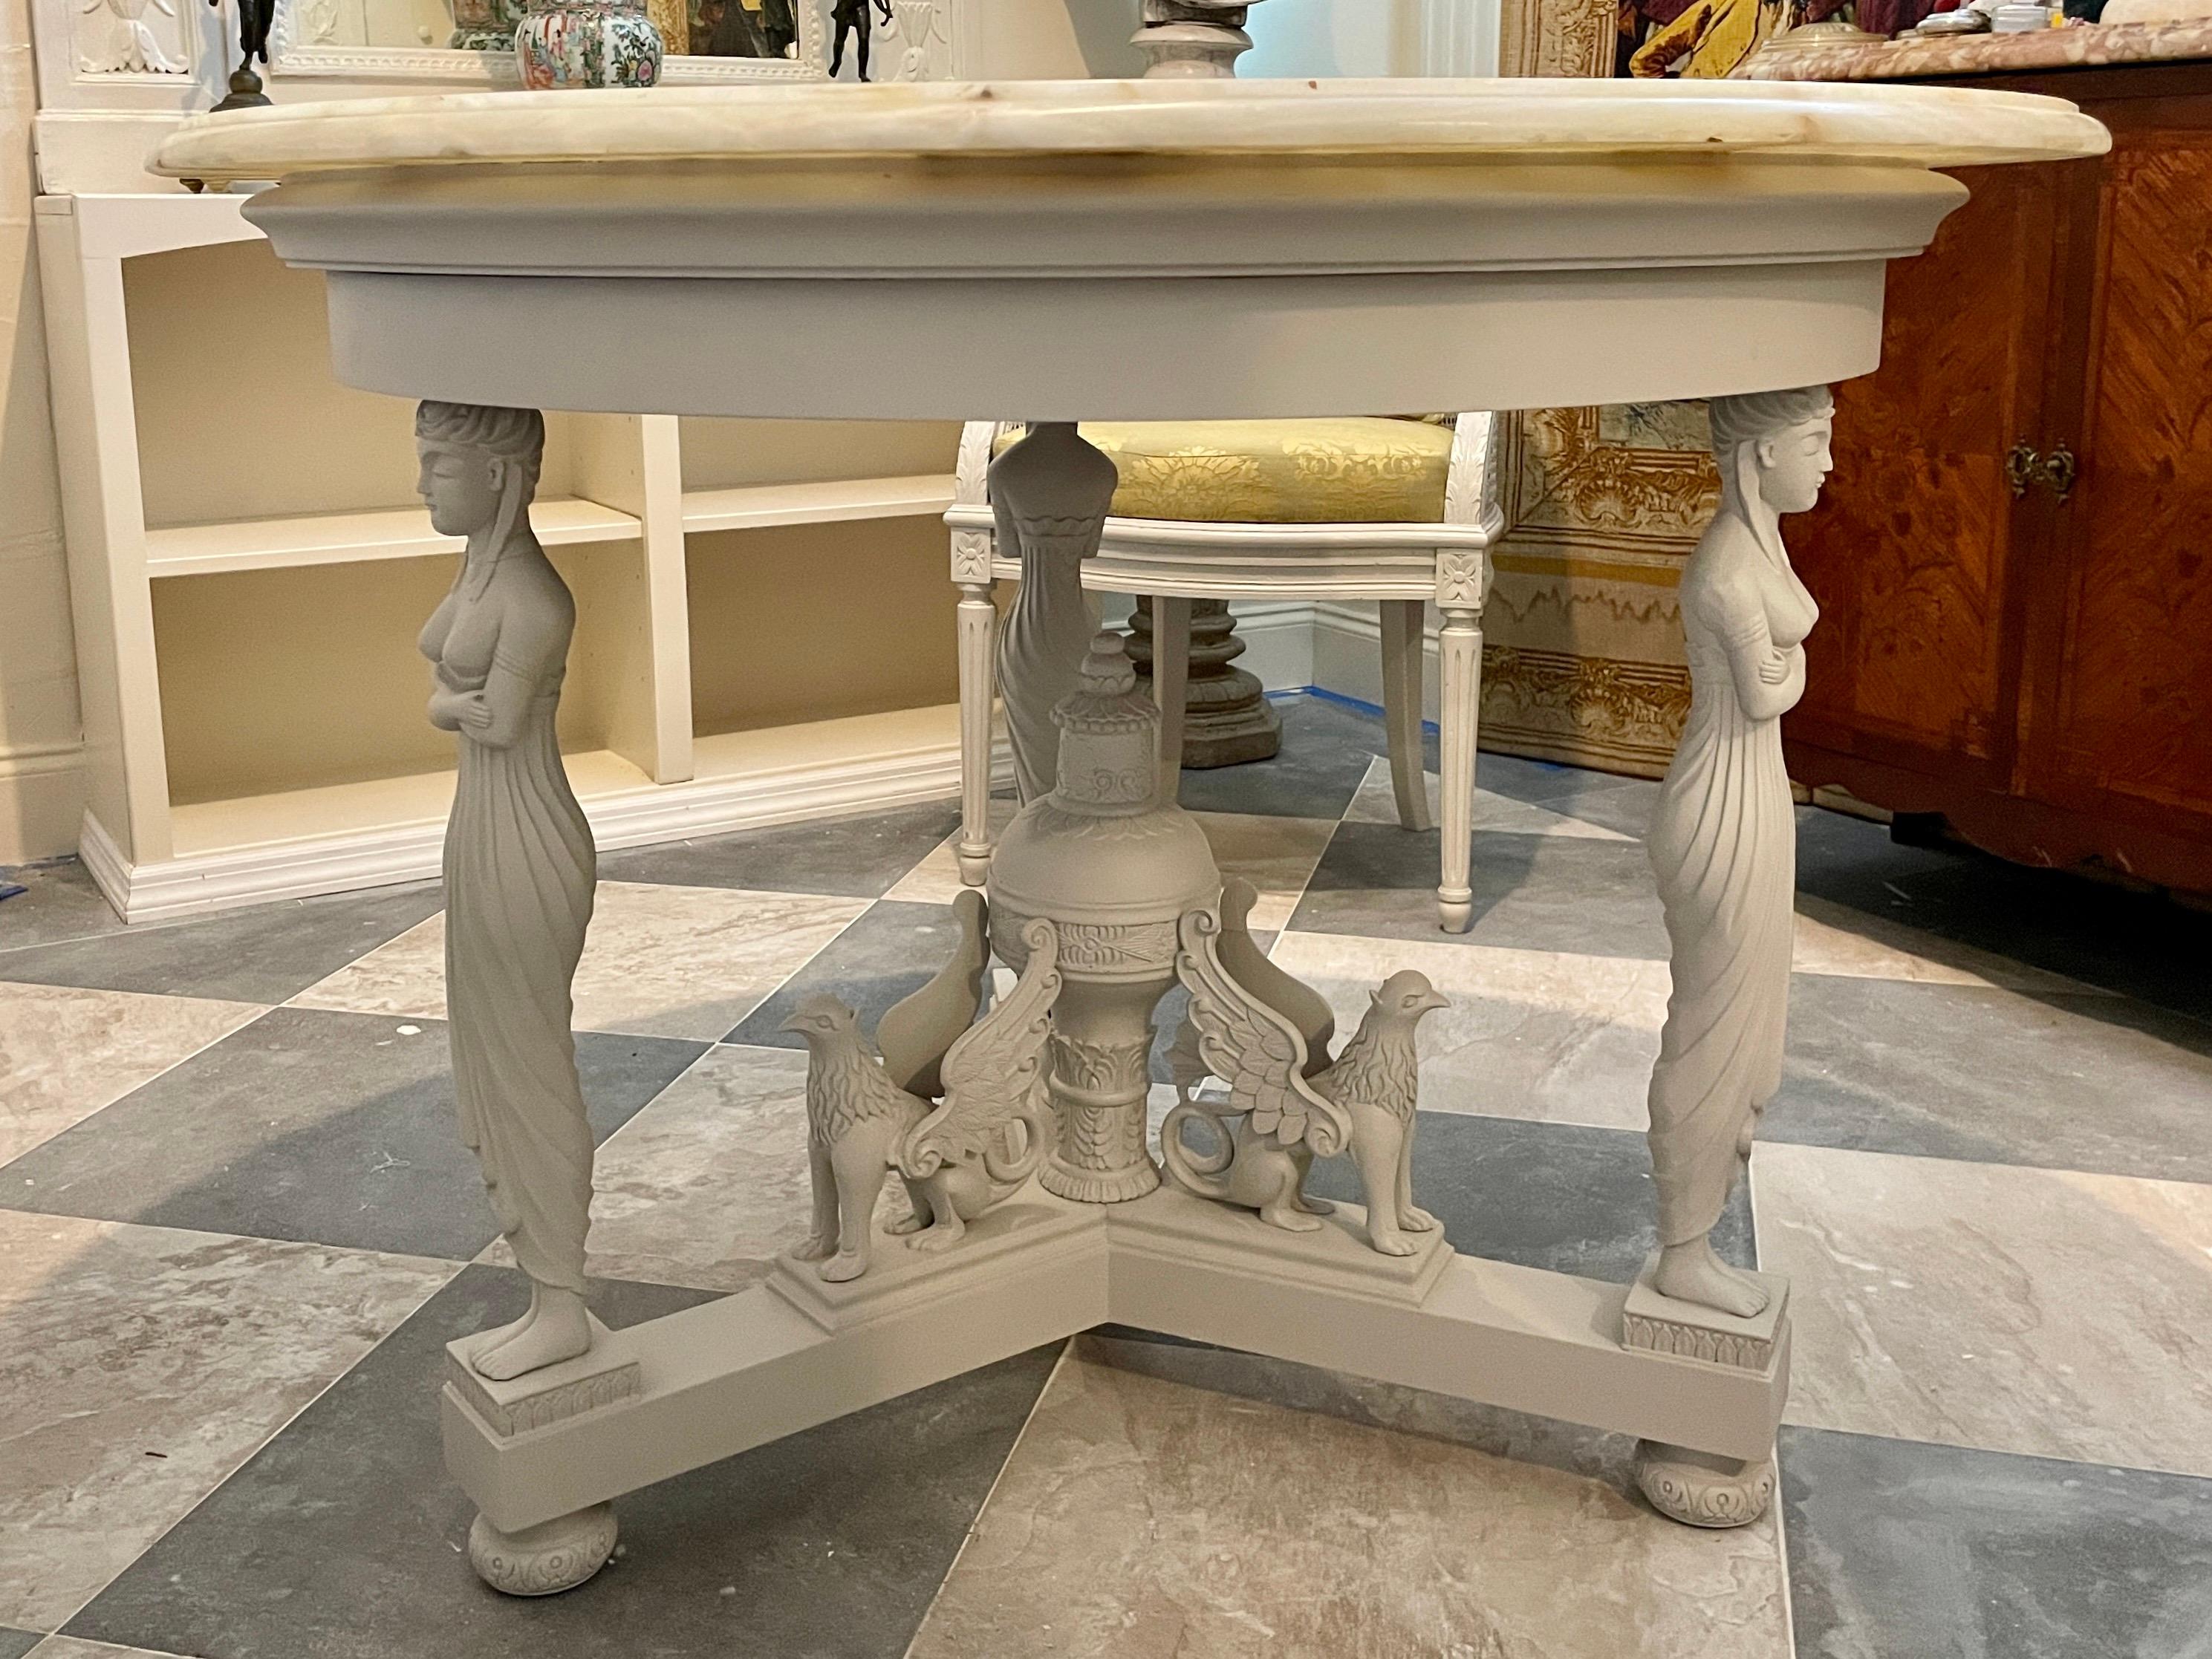 Klassischer französischer Empire-Mitteltisch mit grauer Lackierung und wunderschöner Onyx-Steinplatte. Sehr schöne Farbkombination und sehr selten. Bringen Sie etwas französische klassische Architektur in Ihr Haus.